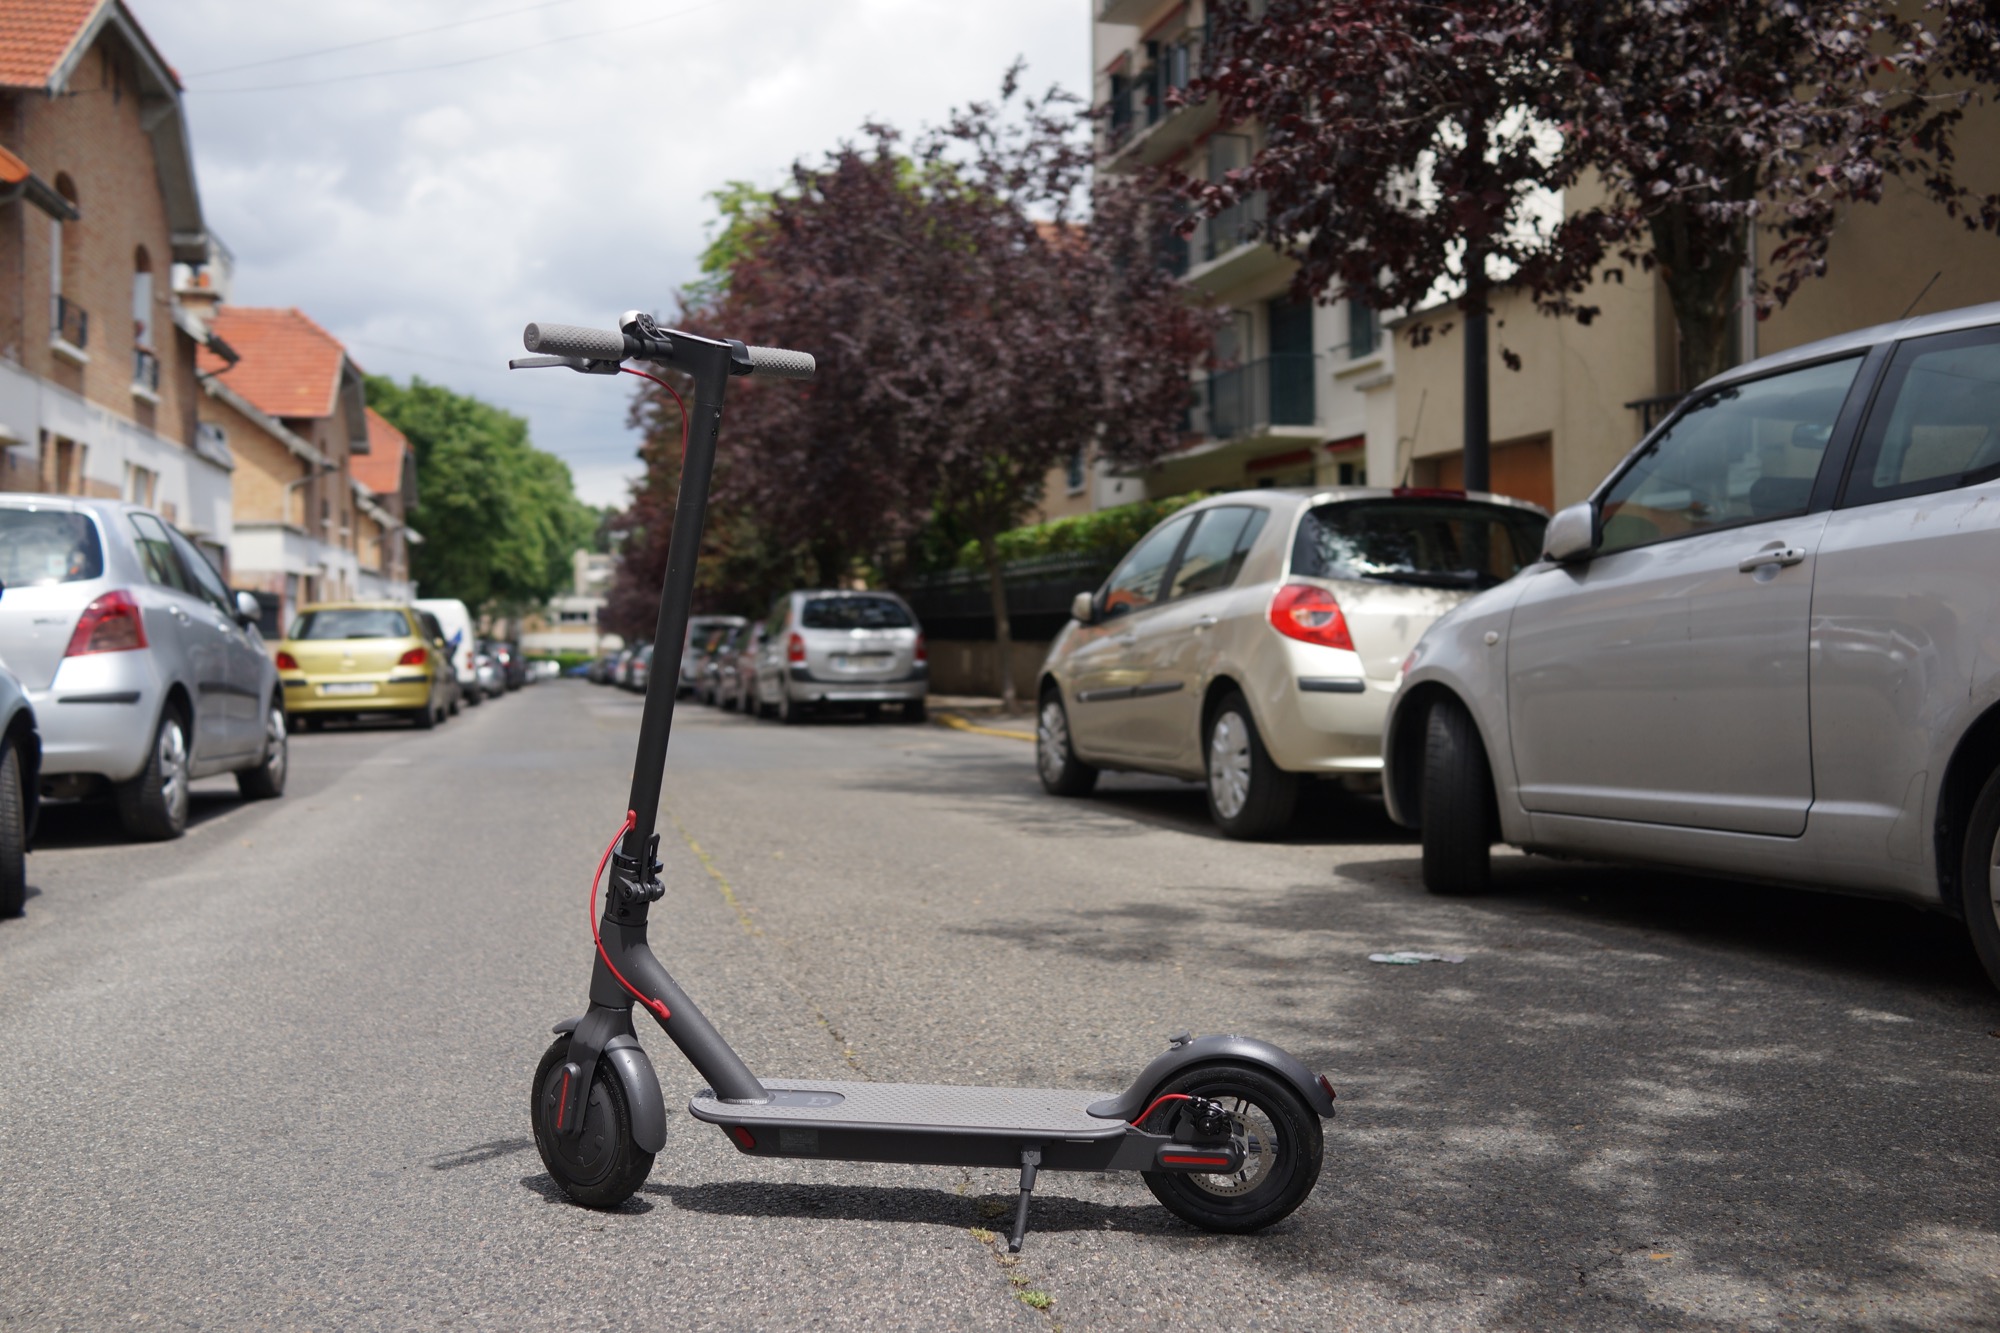 Types de scooters électriques selon la DGT : c'est ainsi que les véhicules de mobilité individuelle seront réglementés